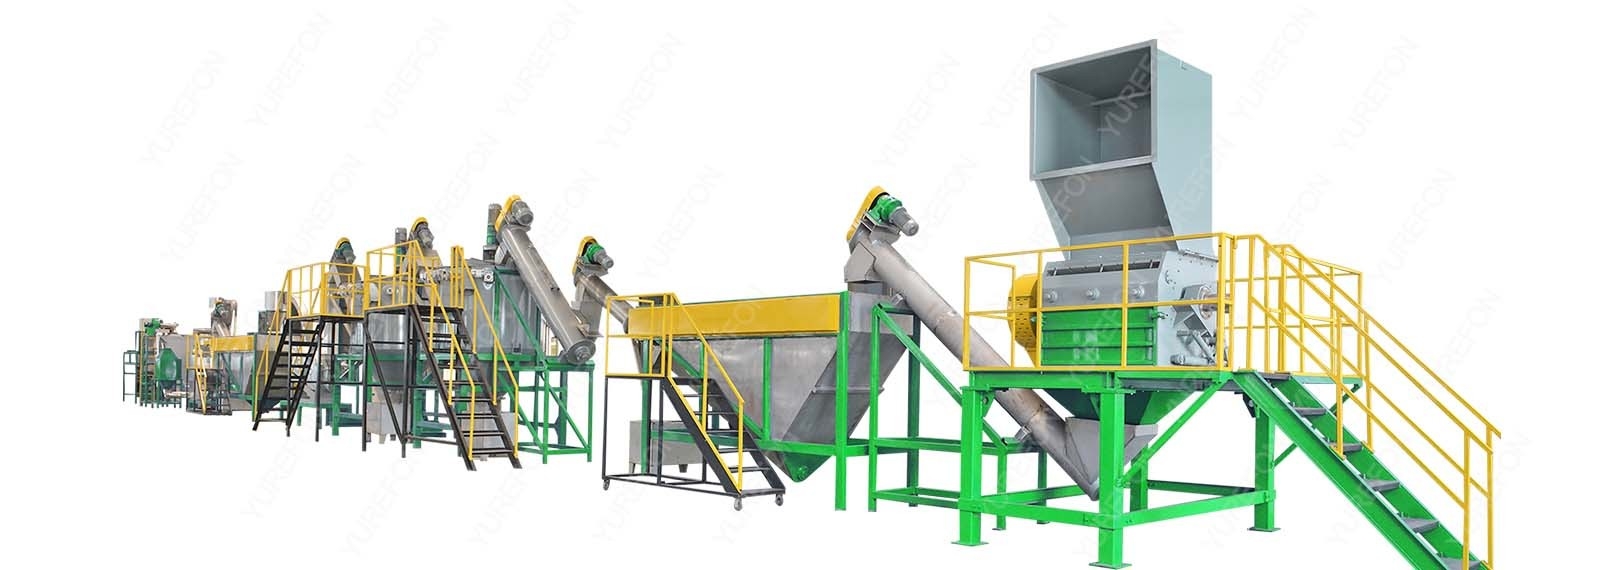 ποιότητας Πλαστική μηχανή ανακύκλωσης πλύσης εργοστάσιο